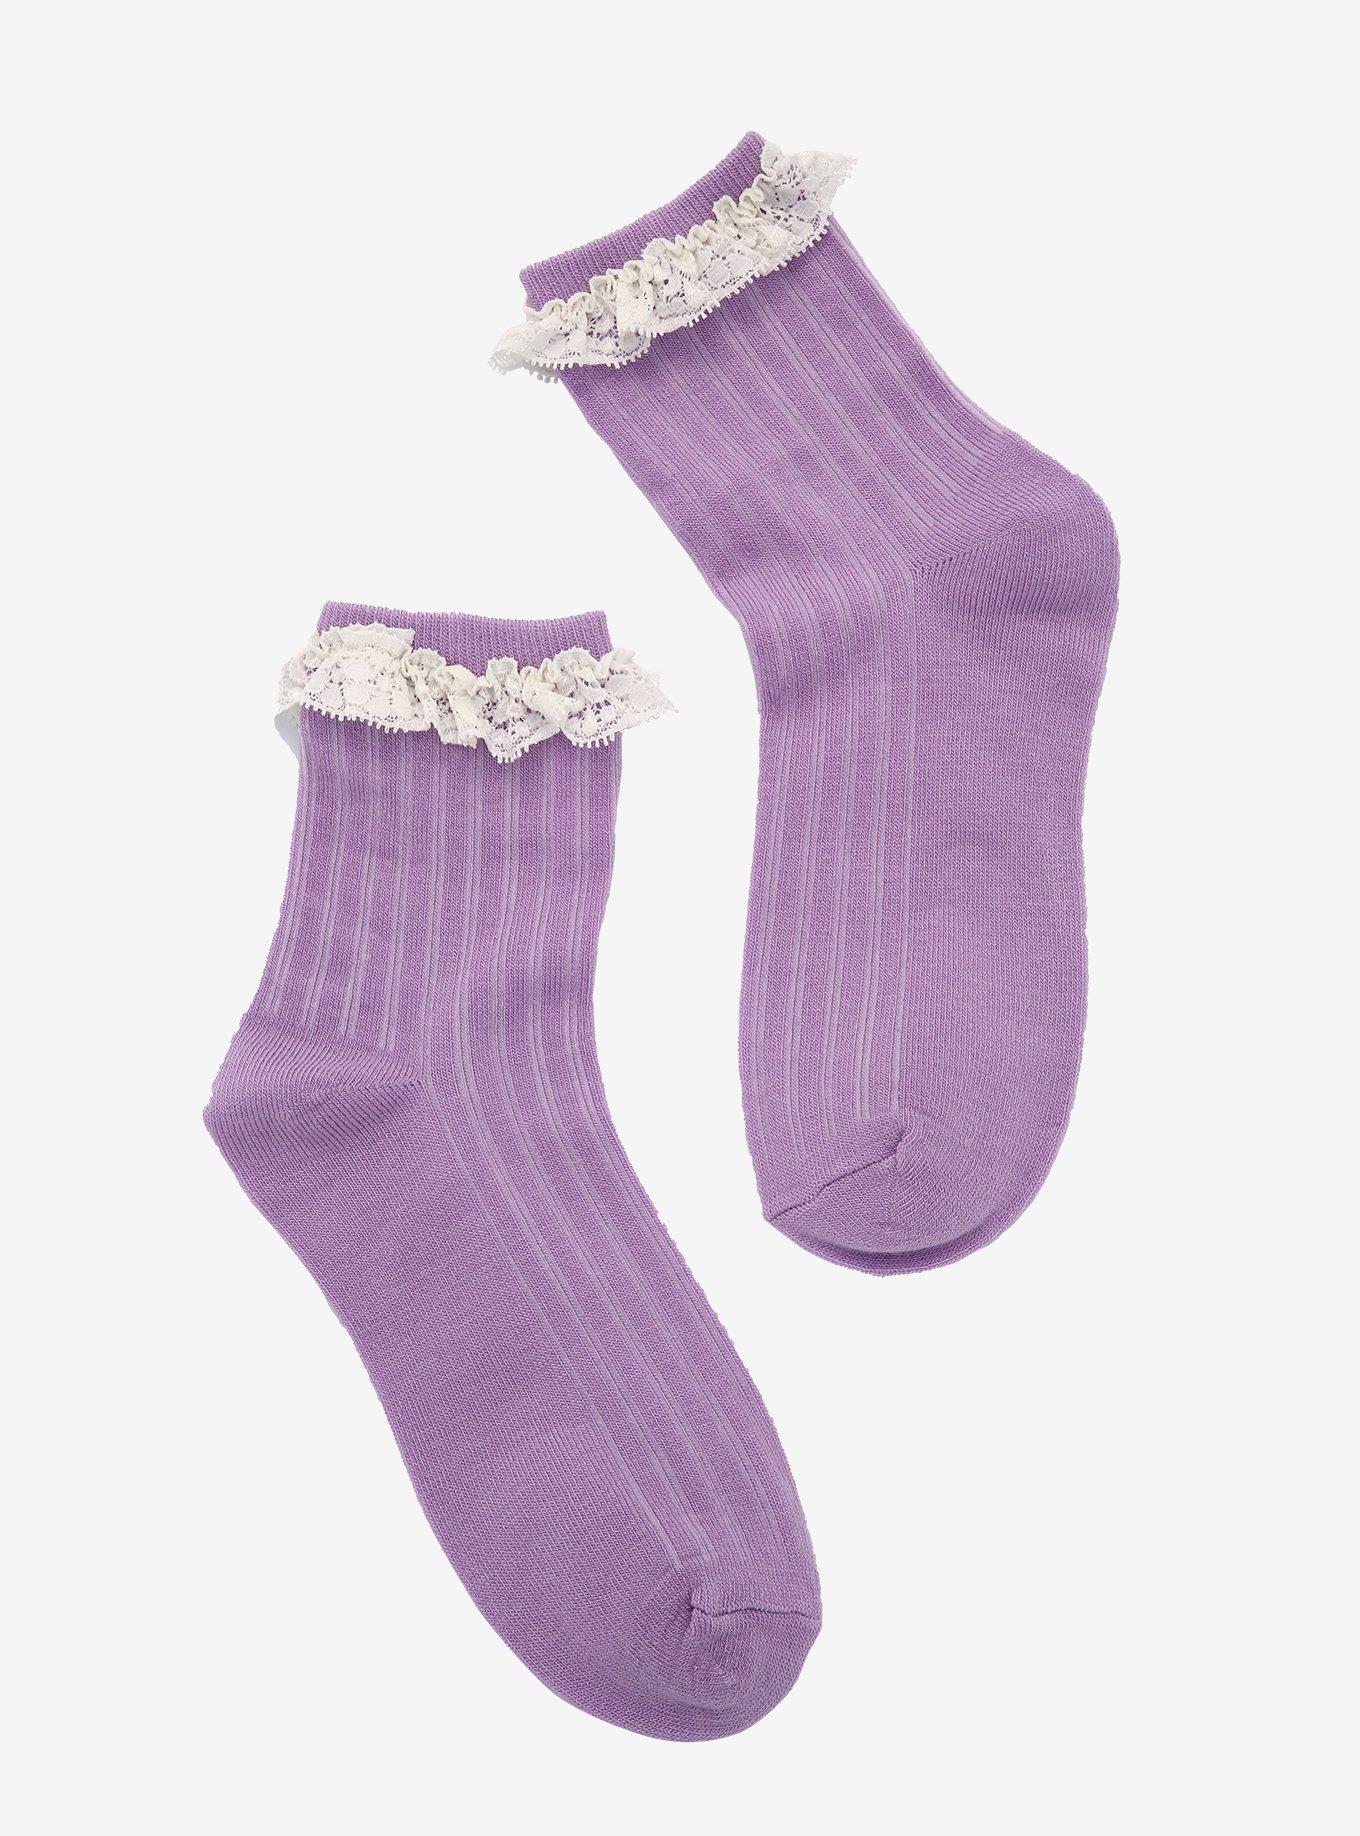 Lavender Lace Ankle Socks, , hi-res